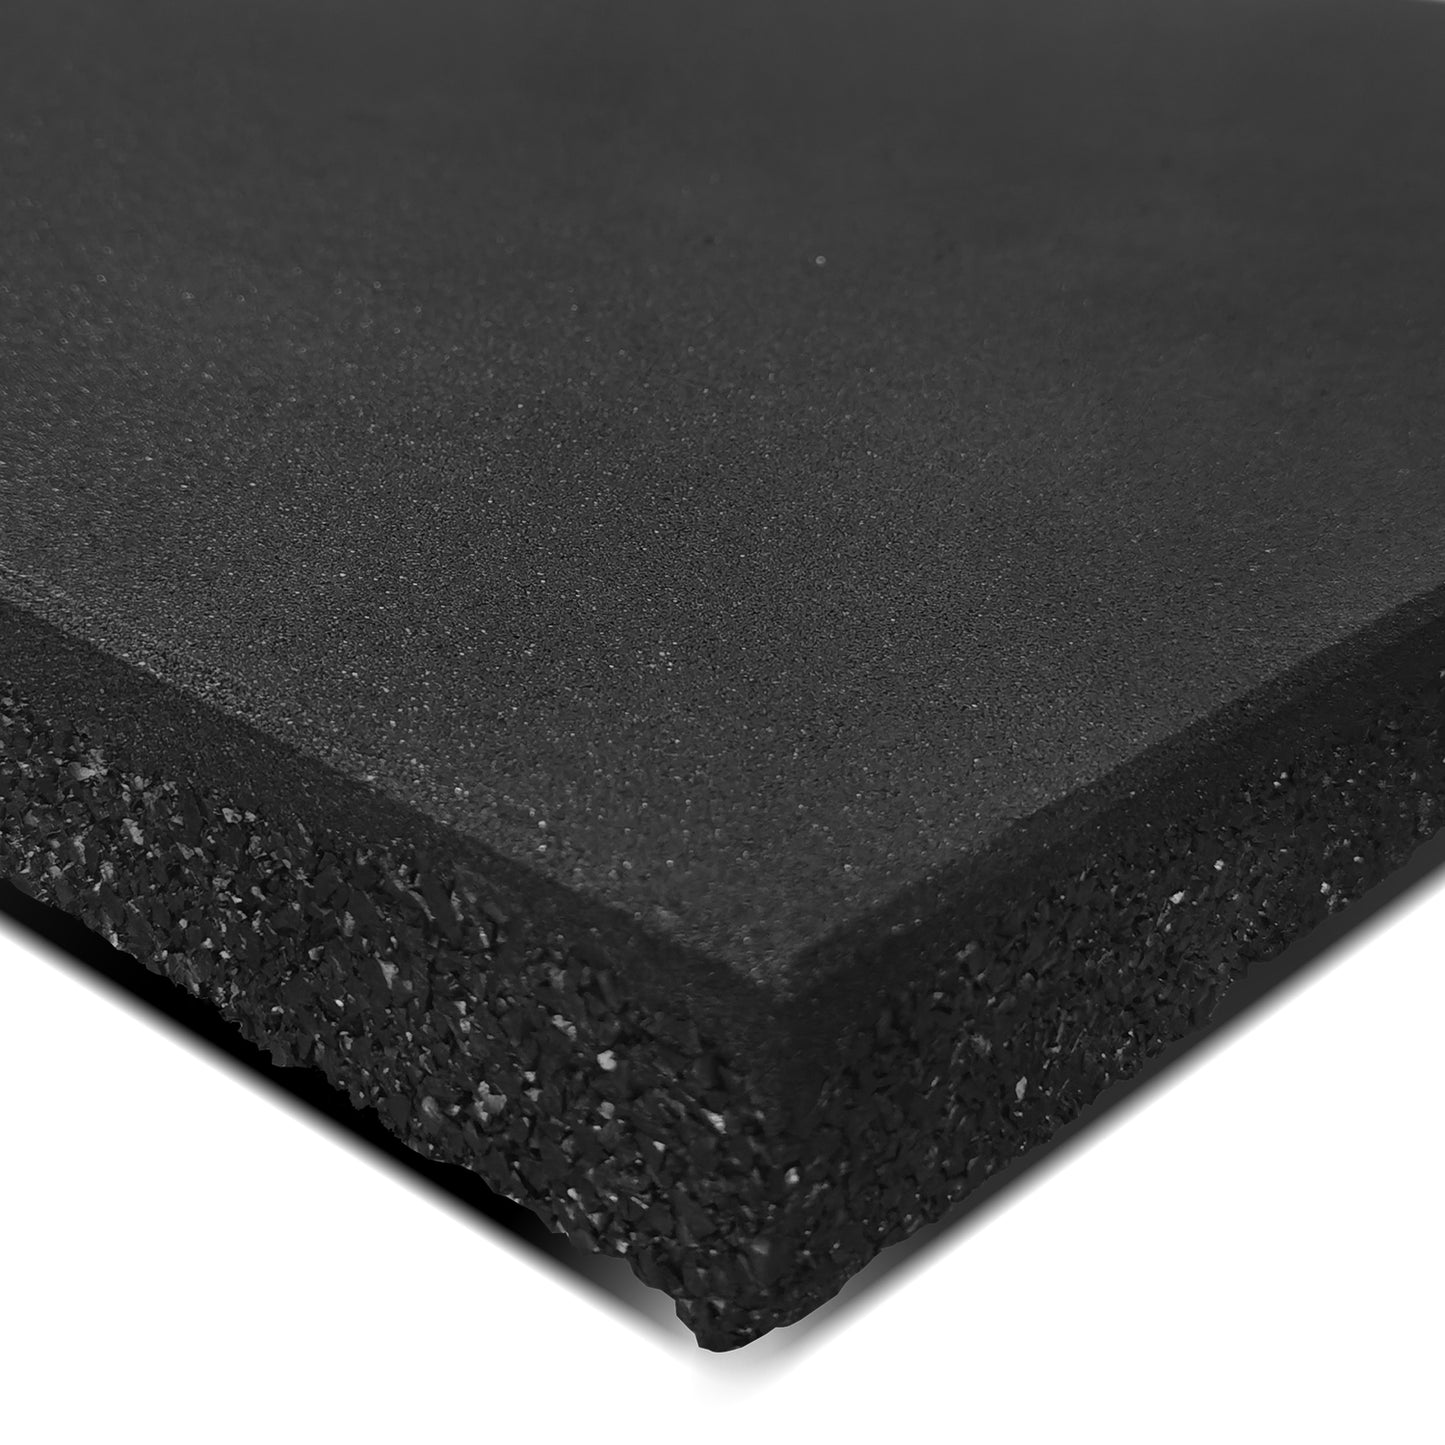 50mm Commercial Dual Density Rubber Gym Floor Tile Mat (1m x 1m)